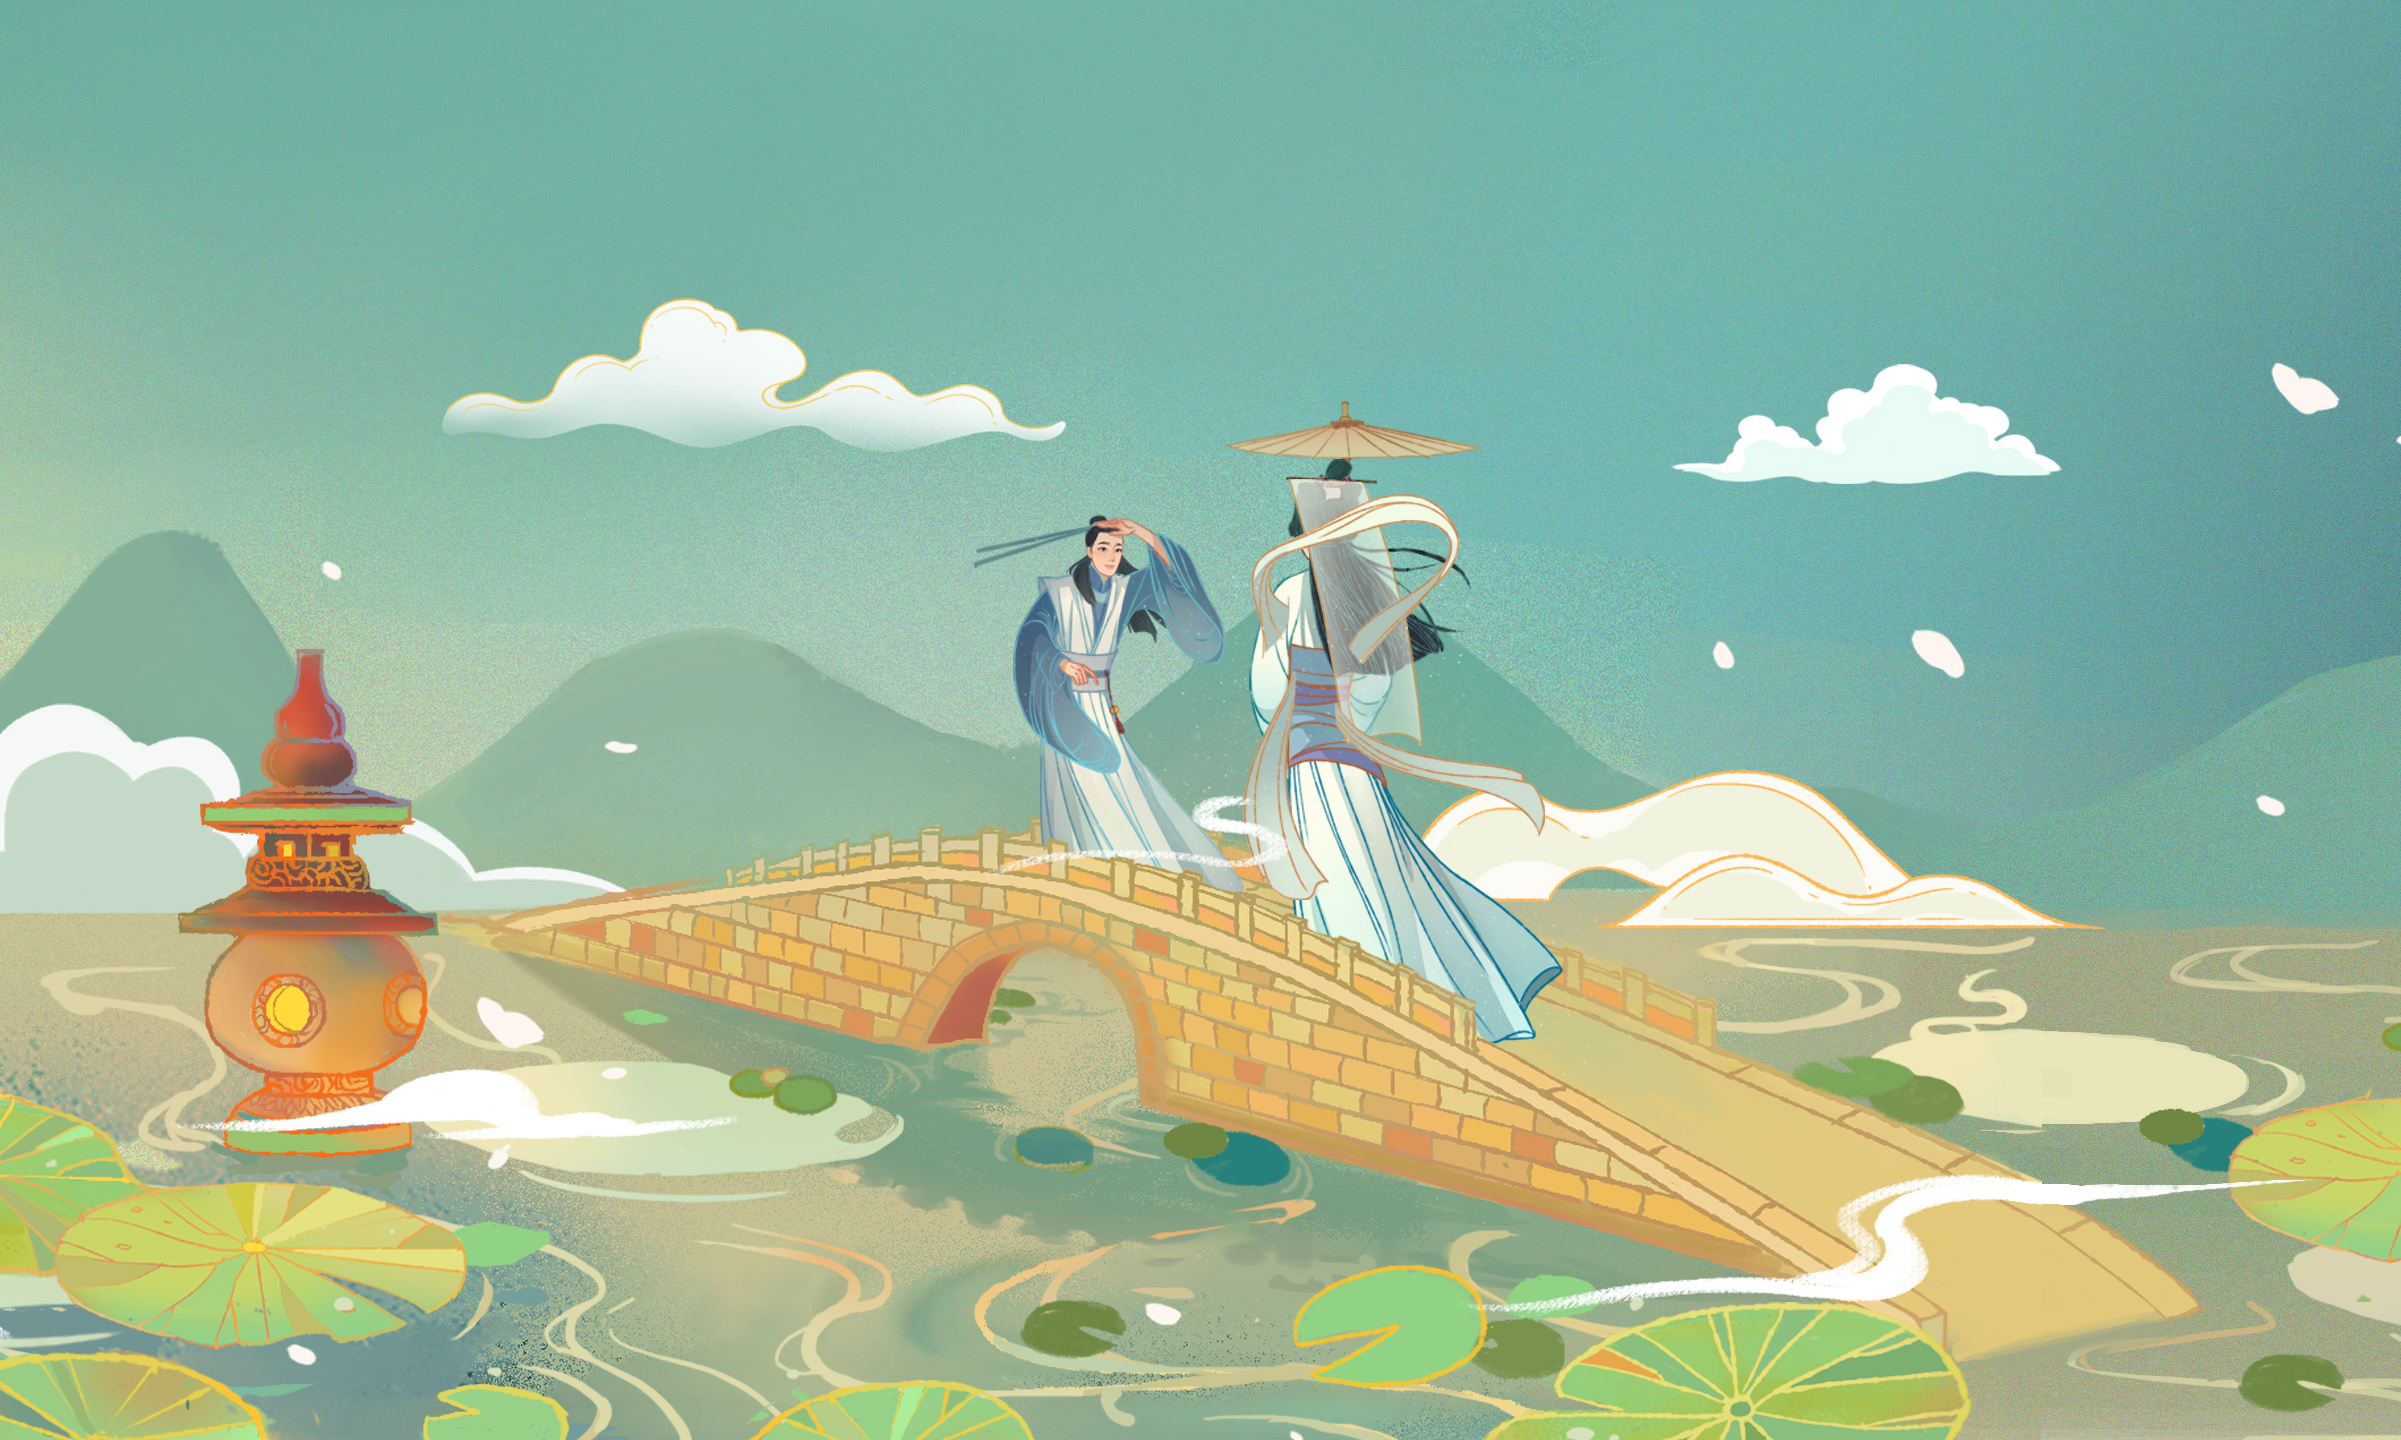 断桥相遇:白素贞与许仙从断桥的两头走到桥中相遇,许仙举起伞,白素贞